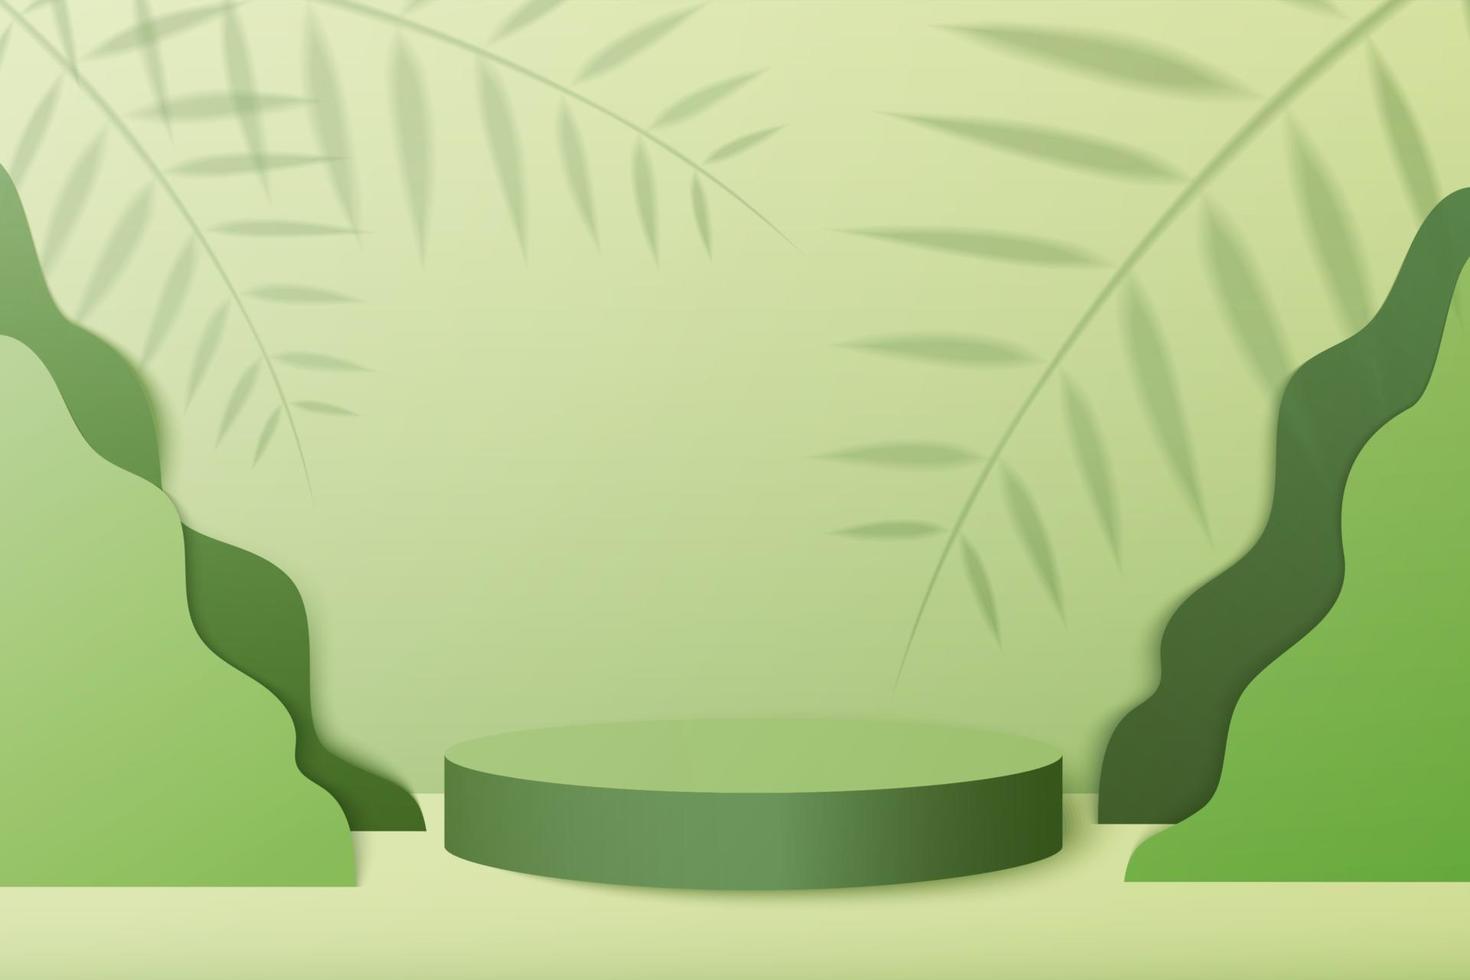 abstracte minimale scène met geometrische vormen. cilinder podium op groene achtergrond met groene plant bladeren. productpresentatie, mockup, showproduct, podium, podiumsokkel of platform. 3D-vector vector